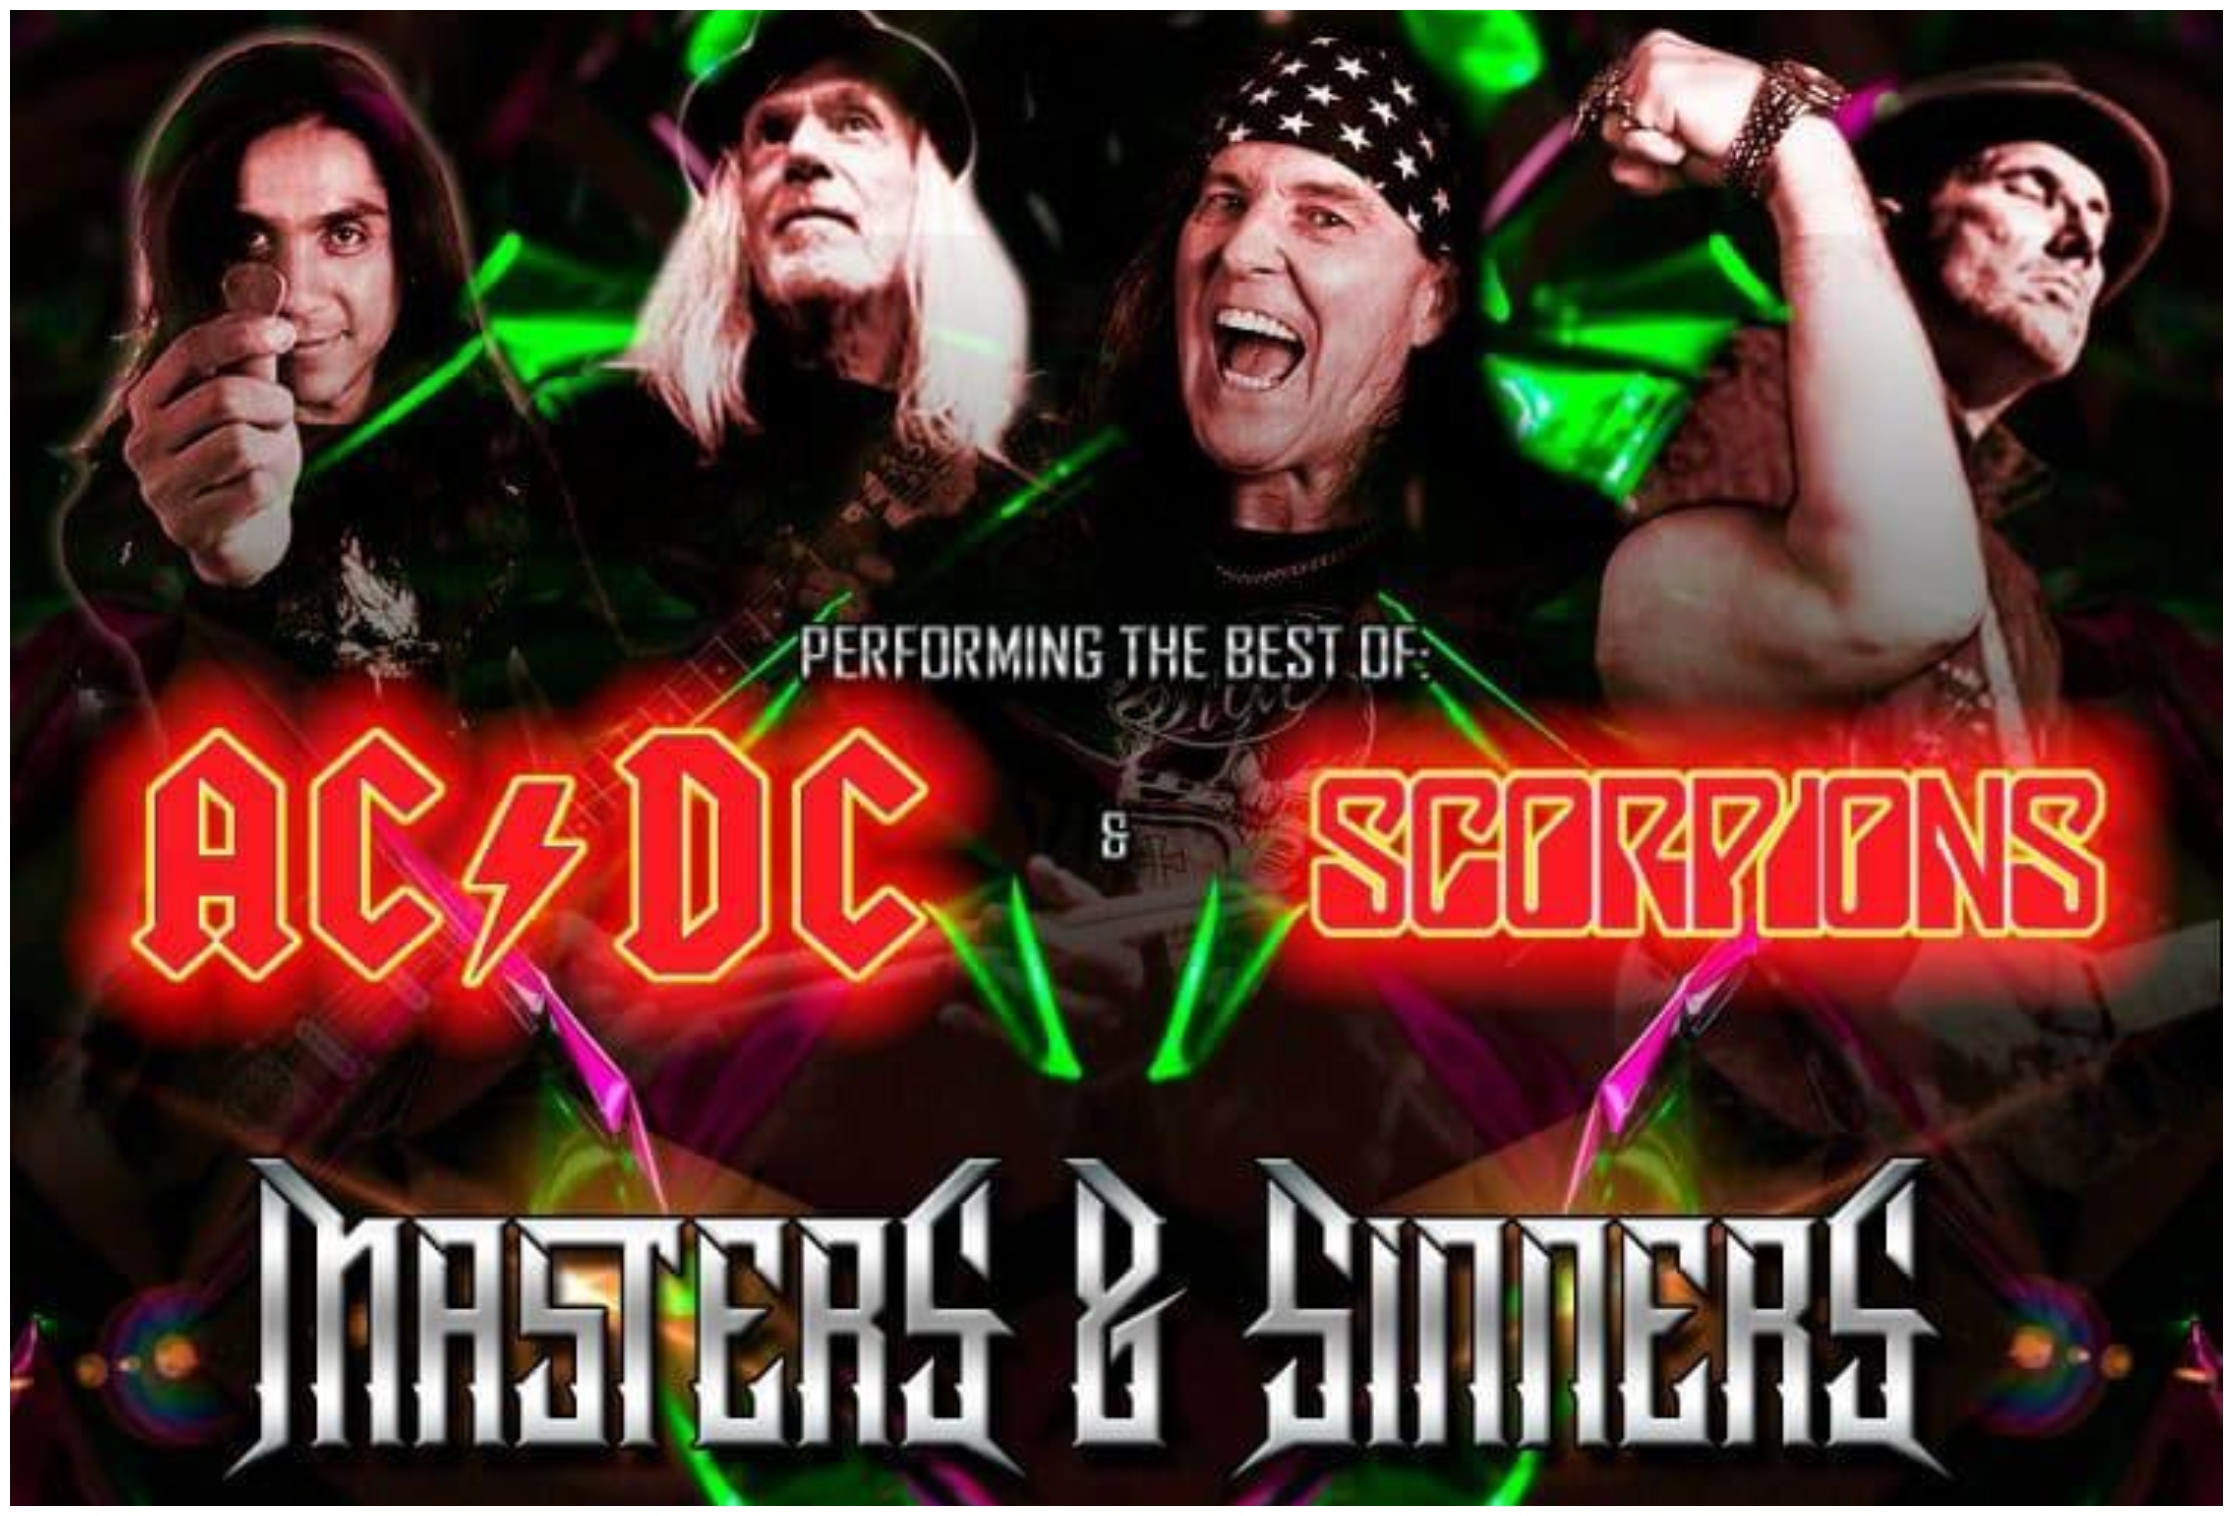 Autoconcierto en homenaje a AC/DC y Scorpions